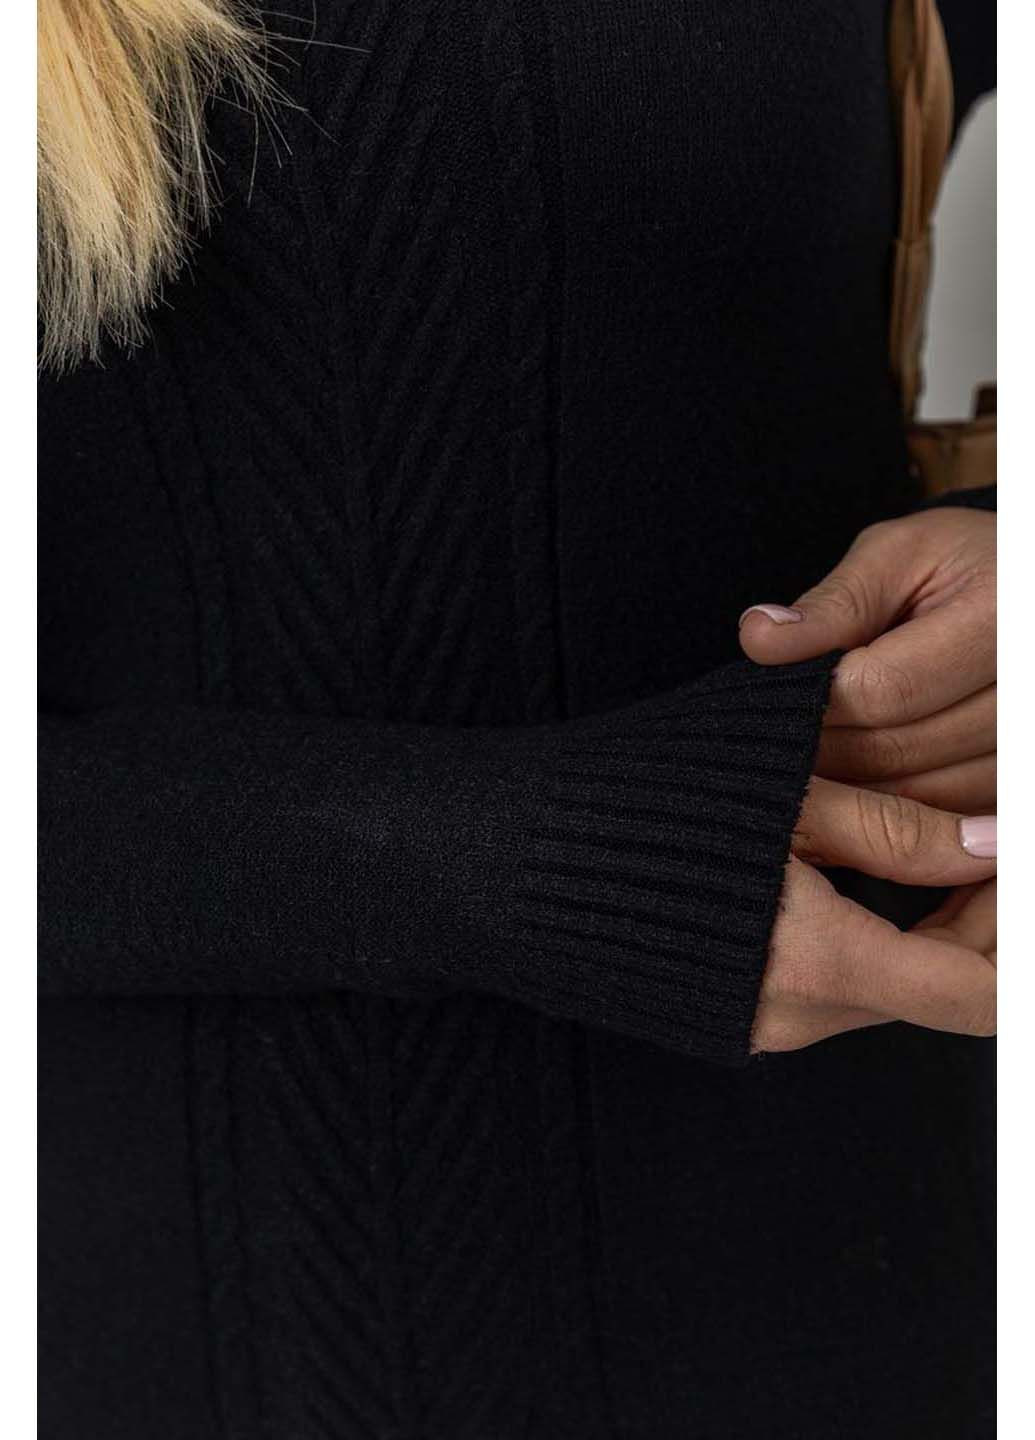 Черный демисезонный свитер Ager